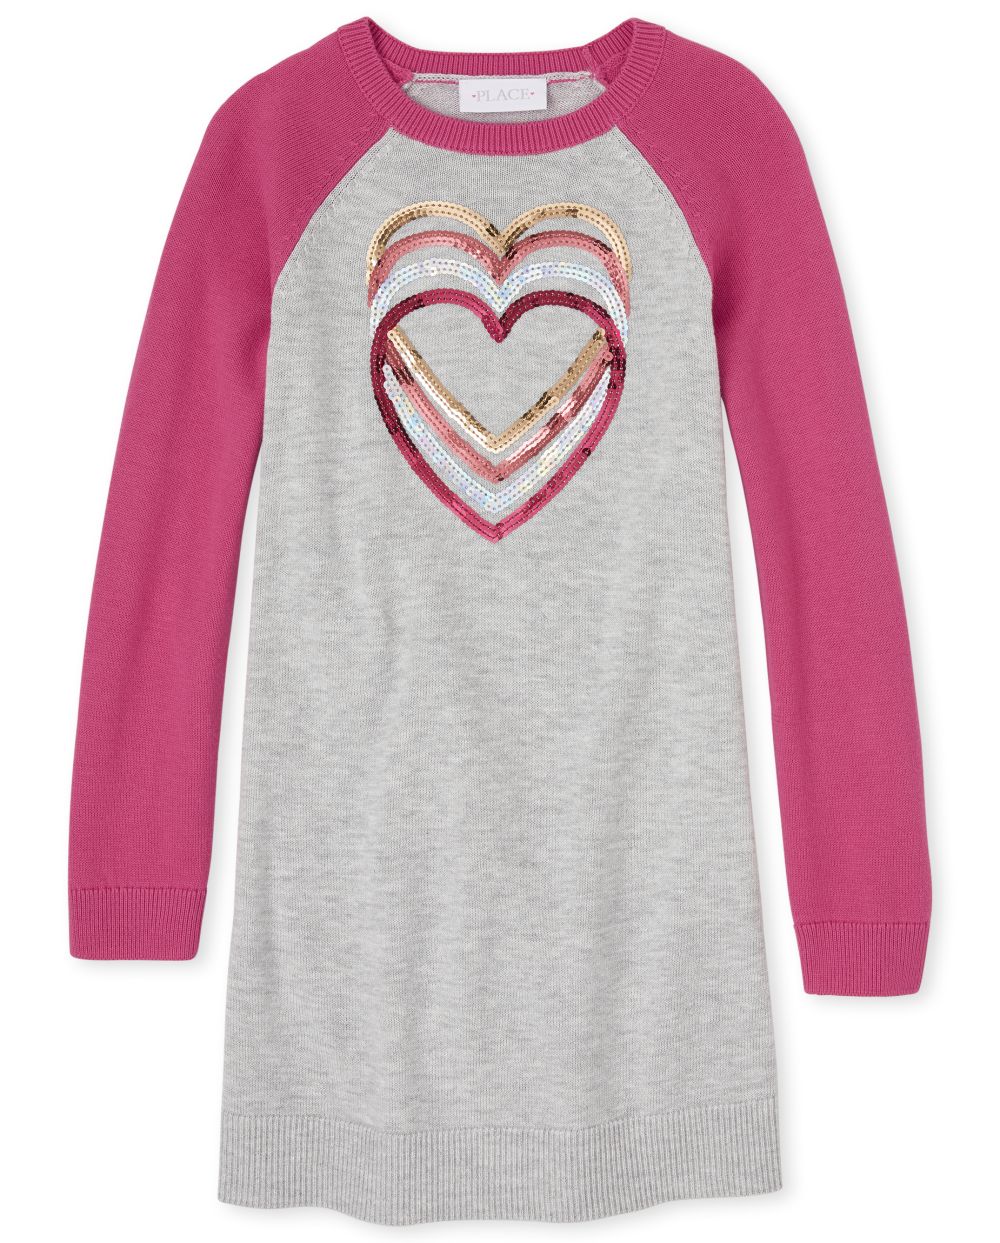 

Girls Heart Raglan Sweater Dress - Pink - The Children's Place